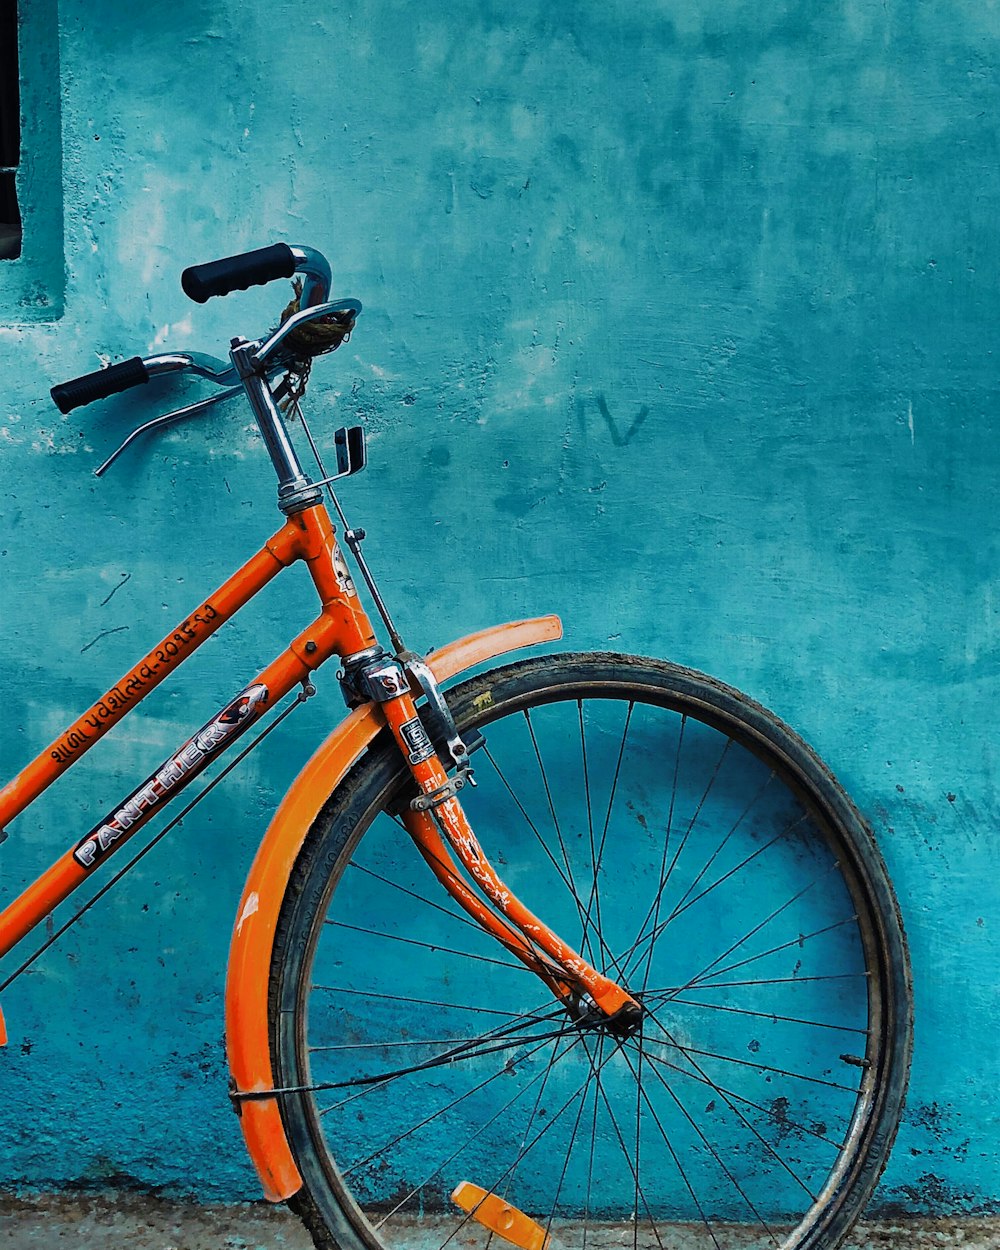 파란색으로 칠해진 벽에 기대어 있는 주황색과 검은색 자전거